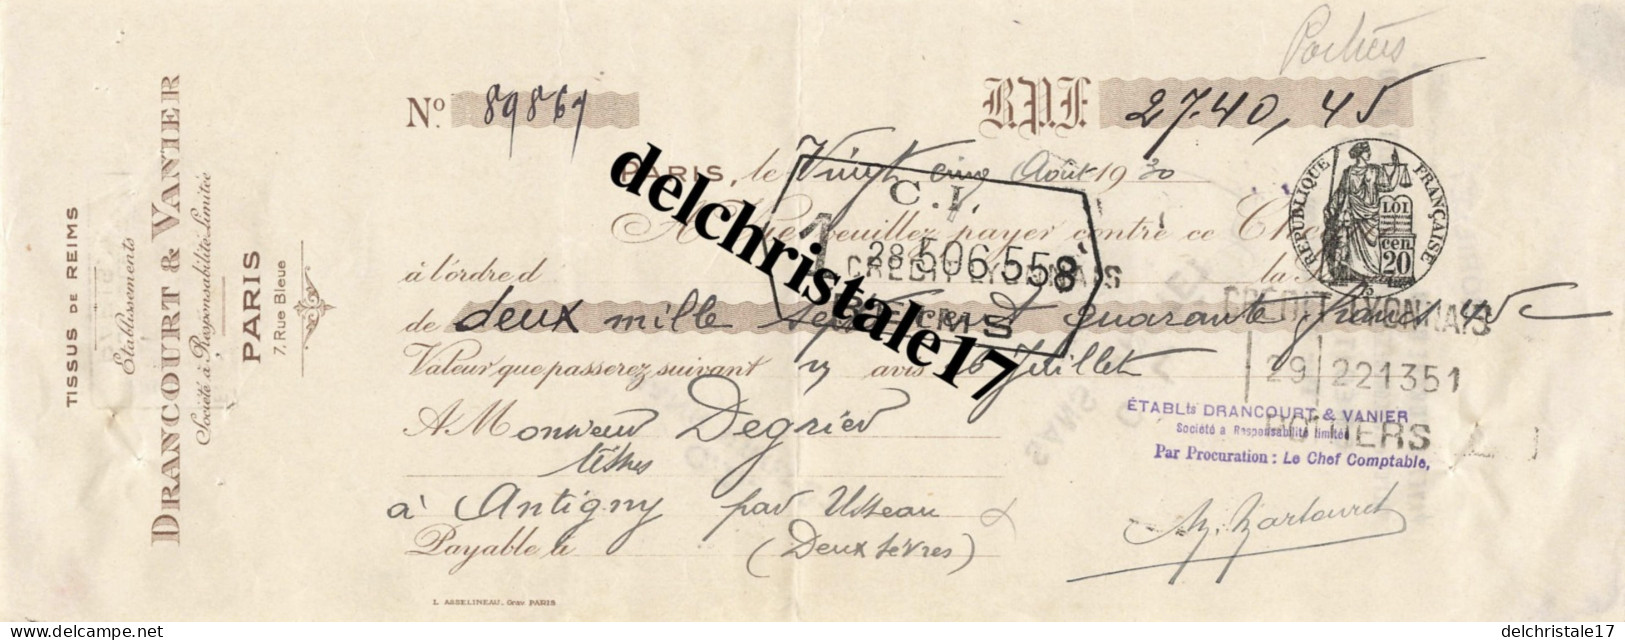 75 0160 PARIS SEINE 1930 Tissus De Reims Éts DRANCOURT & VANIER 7 Rue Bleue à M. DEGRIER TISSUS à ANTIGNY-D'USSEAU (79) - Cheques & Traveler's Cheques